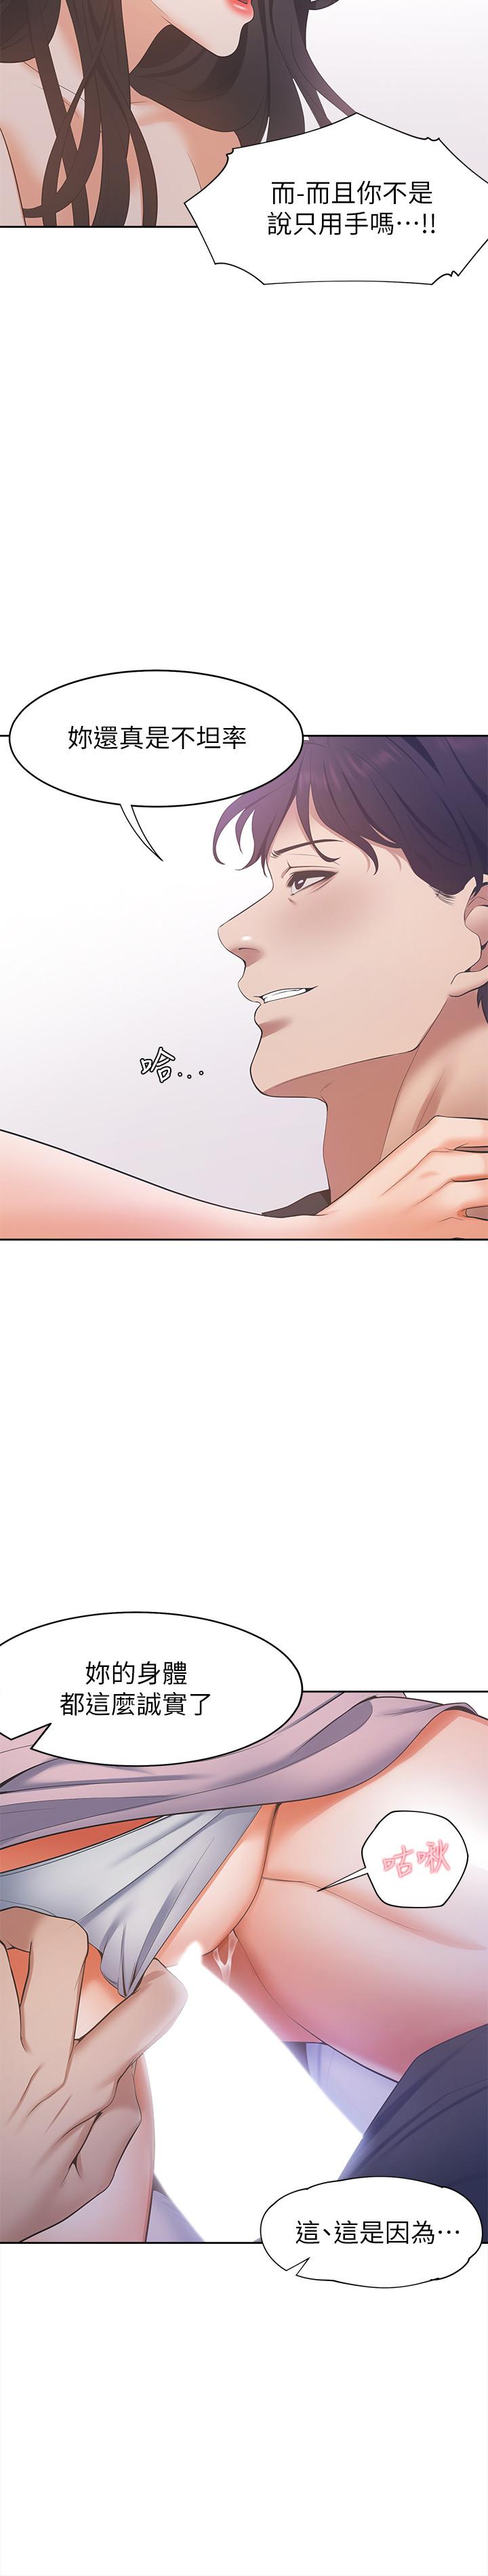 渴望：愛火難耐漫画 免费阅读 第6话-初次触摸其他男人的性器 27.jpg